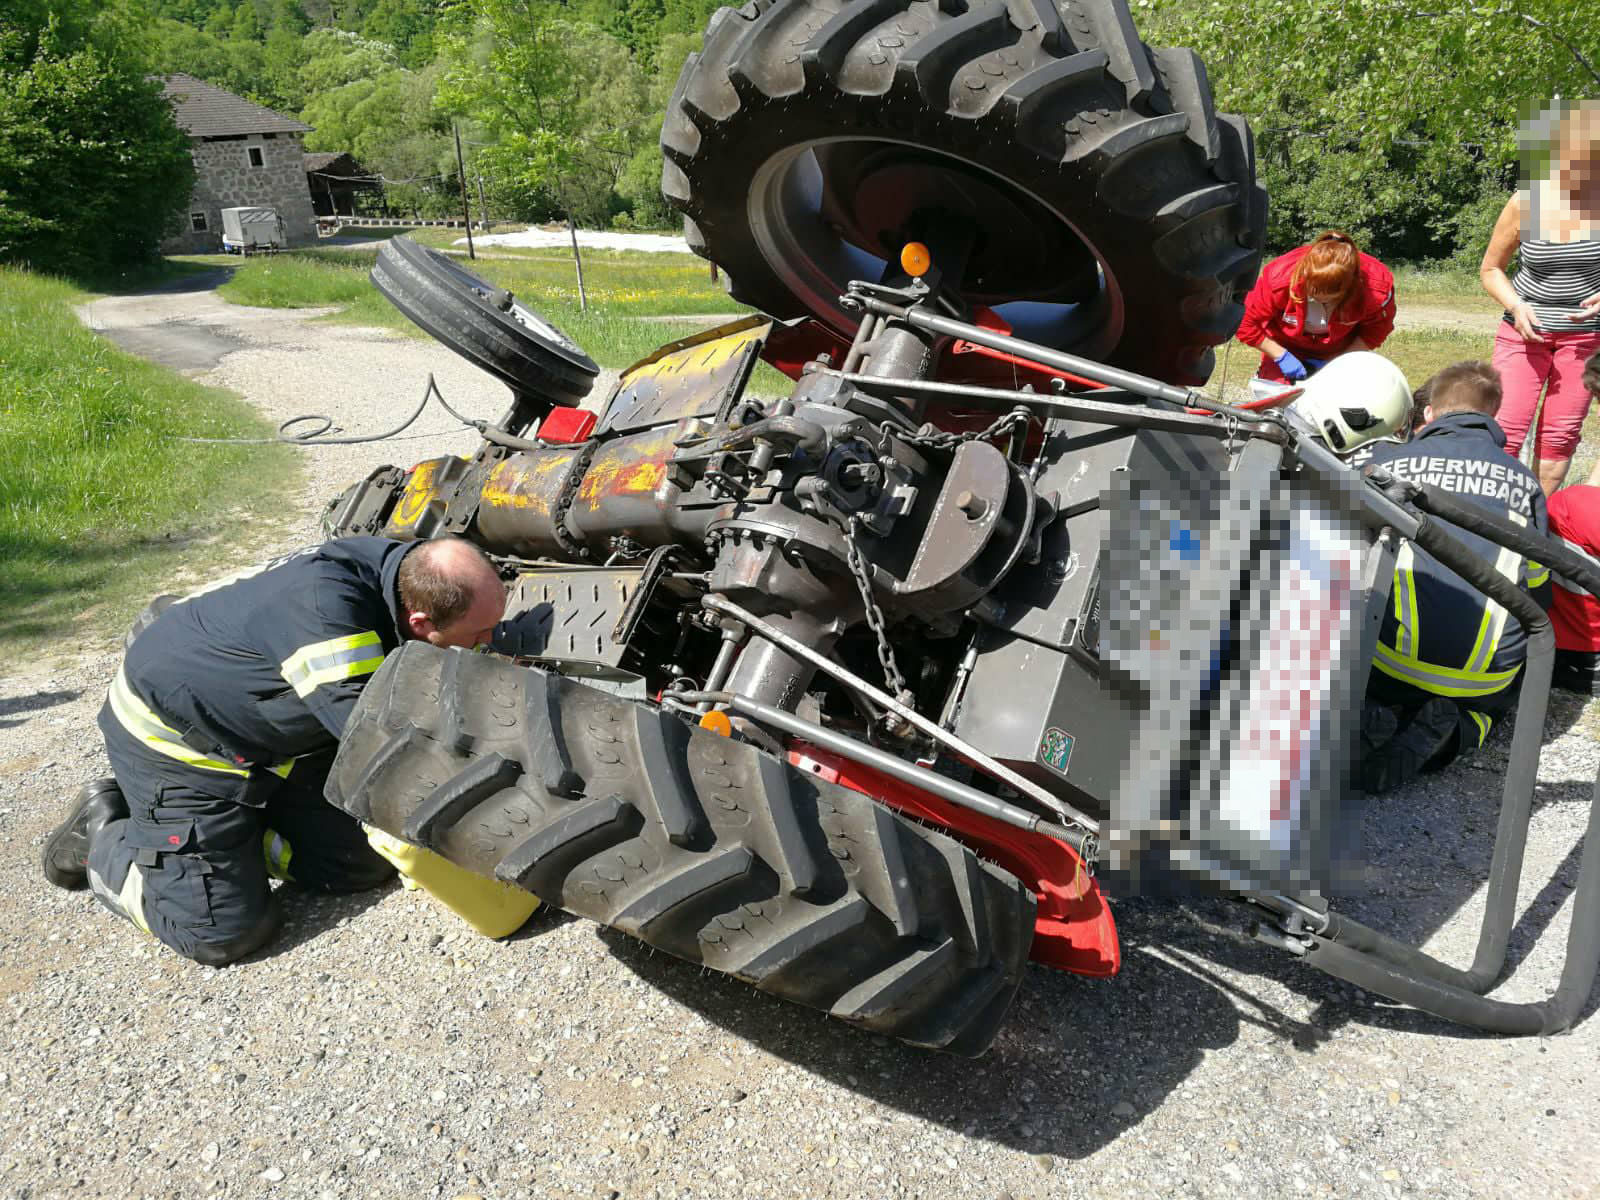 07.05.2018 - EINSATZ: Traktorlenker nach Überholmanöver eingeklemmt